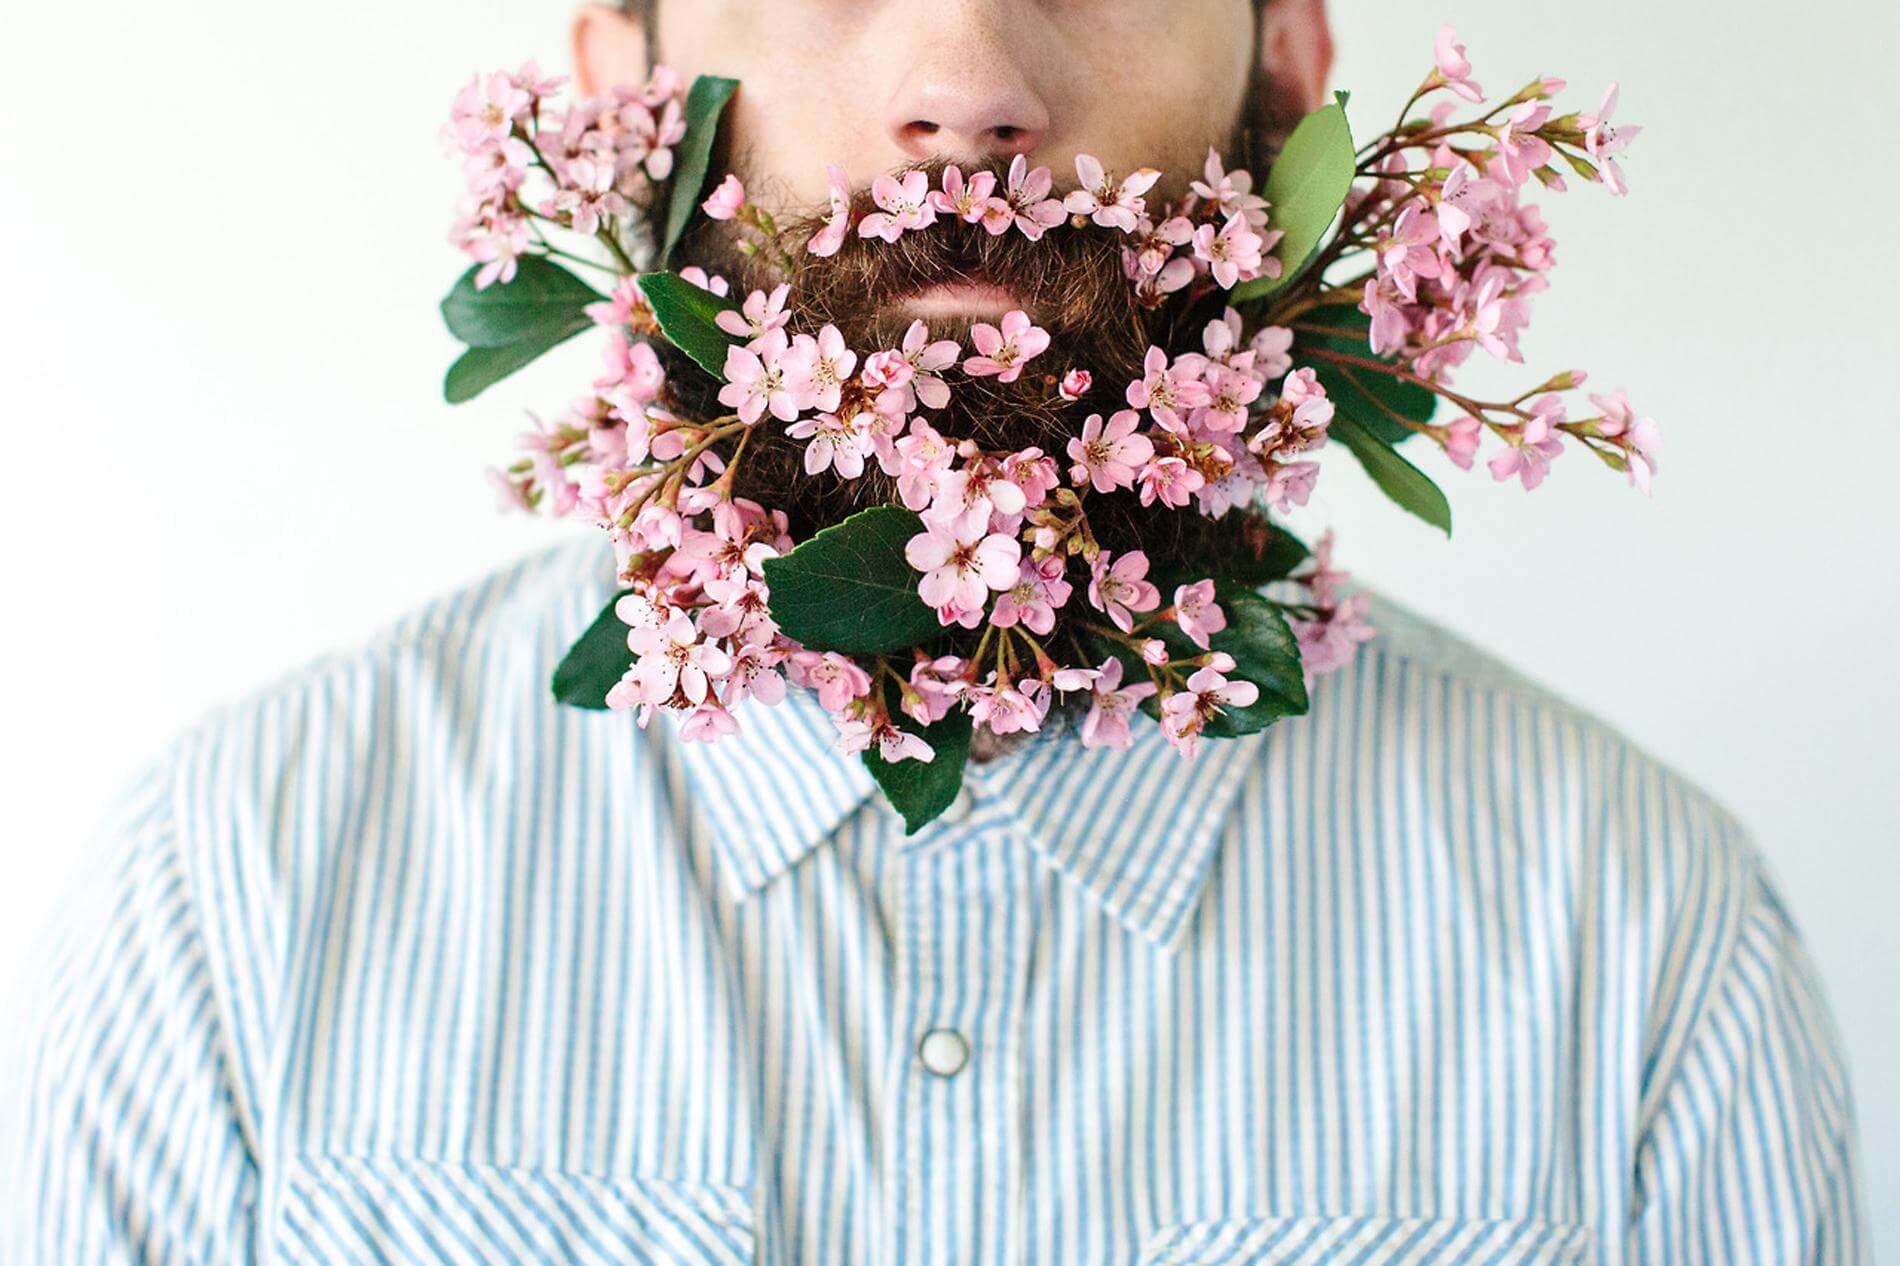 Мужчина со цветами. Мужчина с цветами. Бородатый мужчина с цветами. Красивый мужчина с цветами. Мужчина с цветами в бороде.